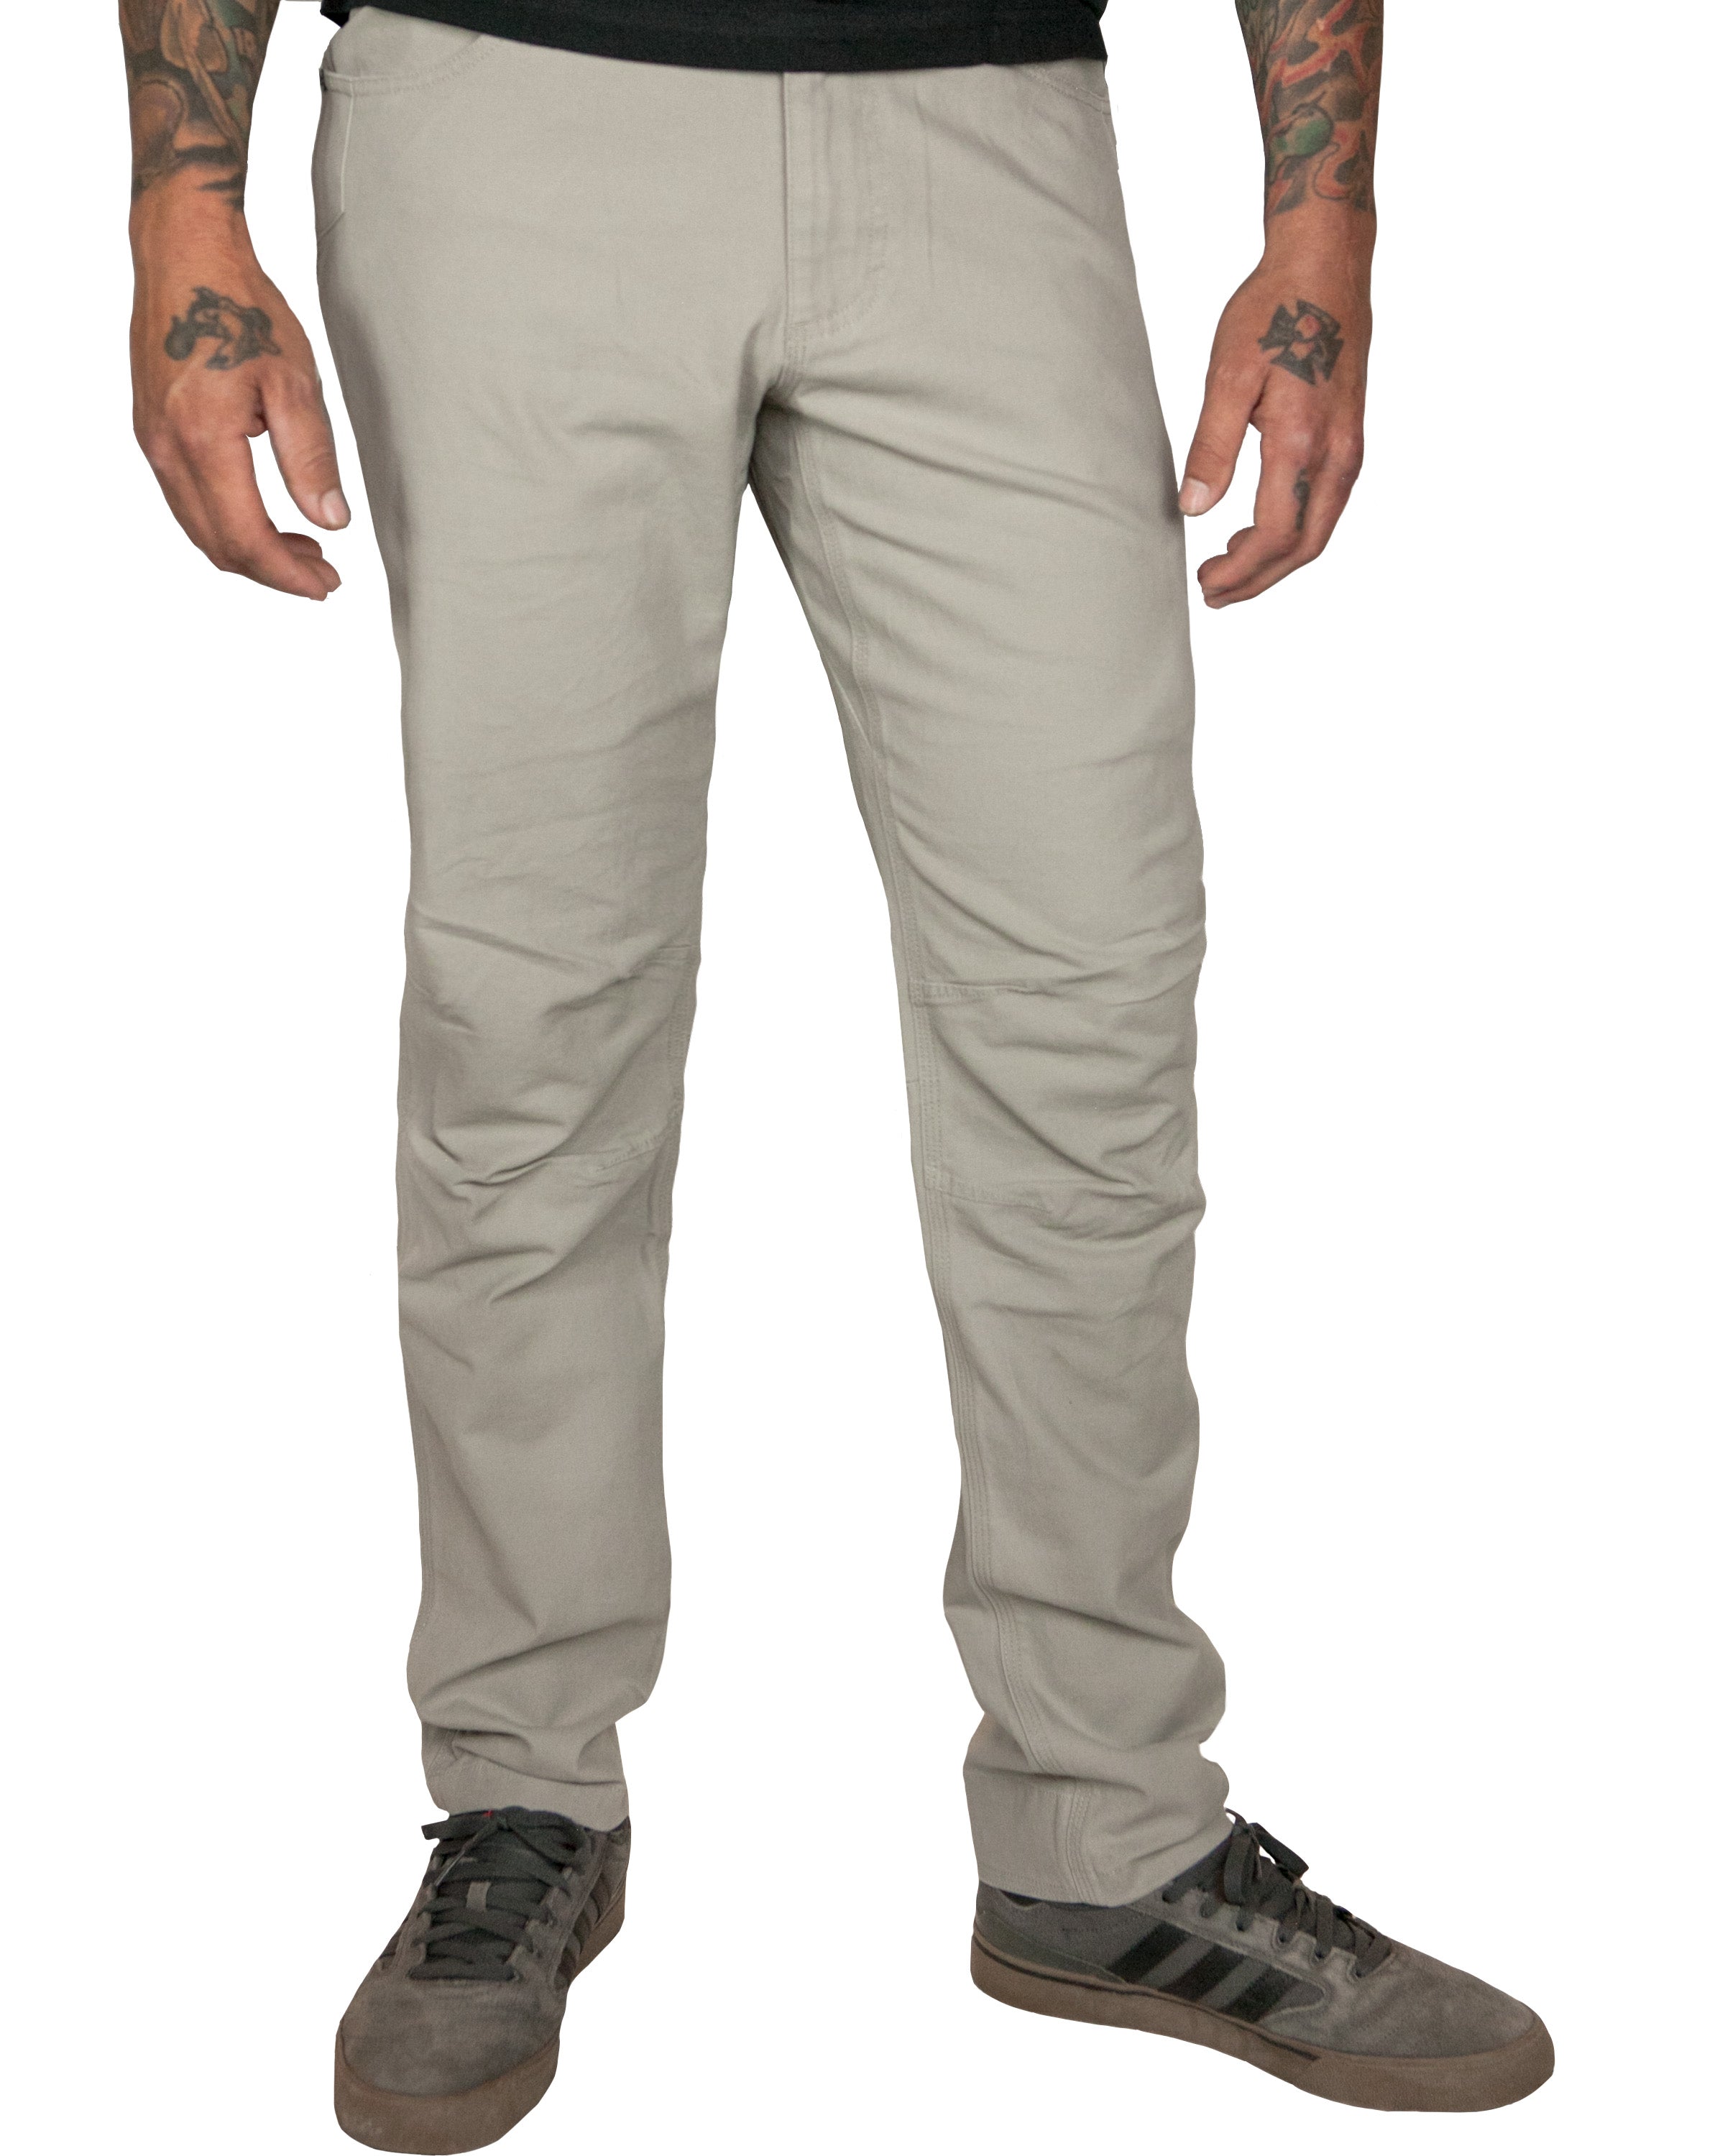 Trailblazer 5.0 Pants - Flint Grey - Taper Fit